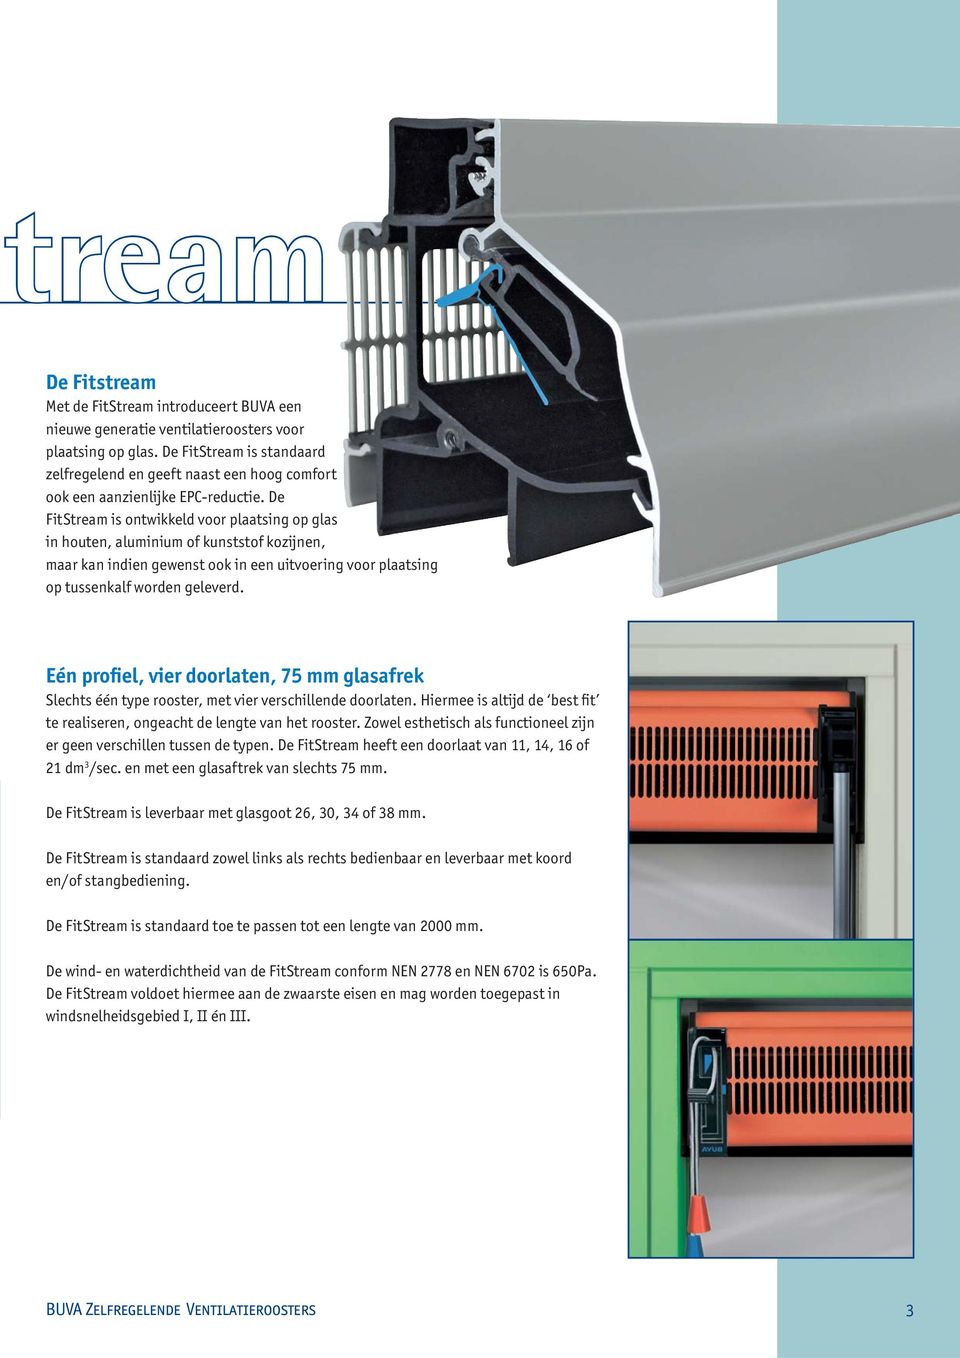 De FitStream is ontwikkeld voor plaatsing op glas in houten, aluminium of kunststof kozijnen, maar kan indien gewenst ook in een uitvoering voor plaatsing op tussenkalf worden geleverd.